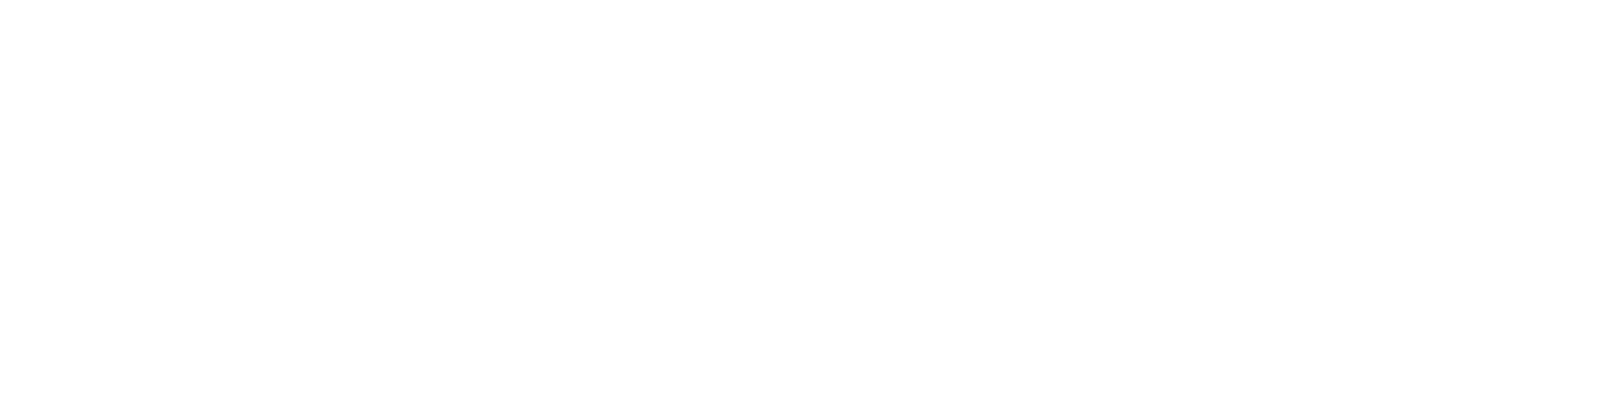 GleSYS_logo_neg